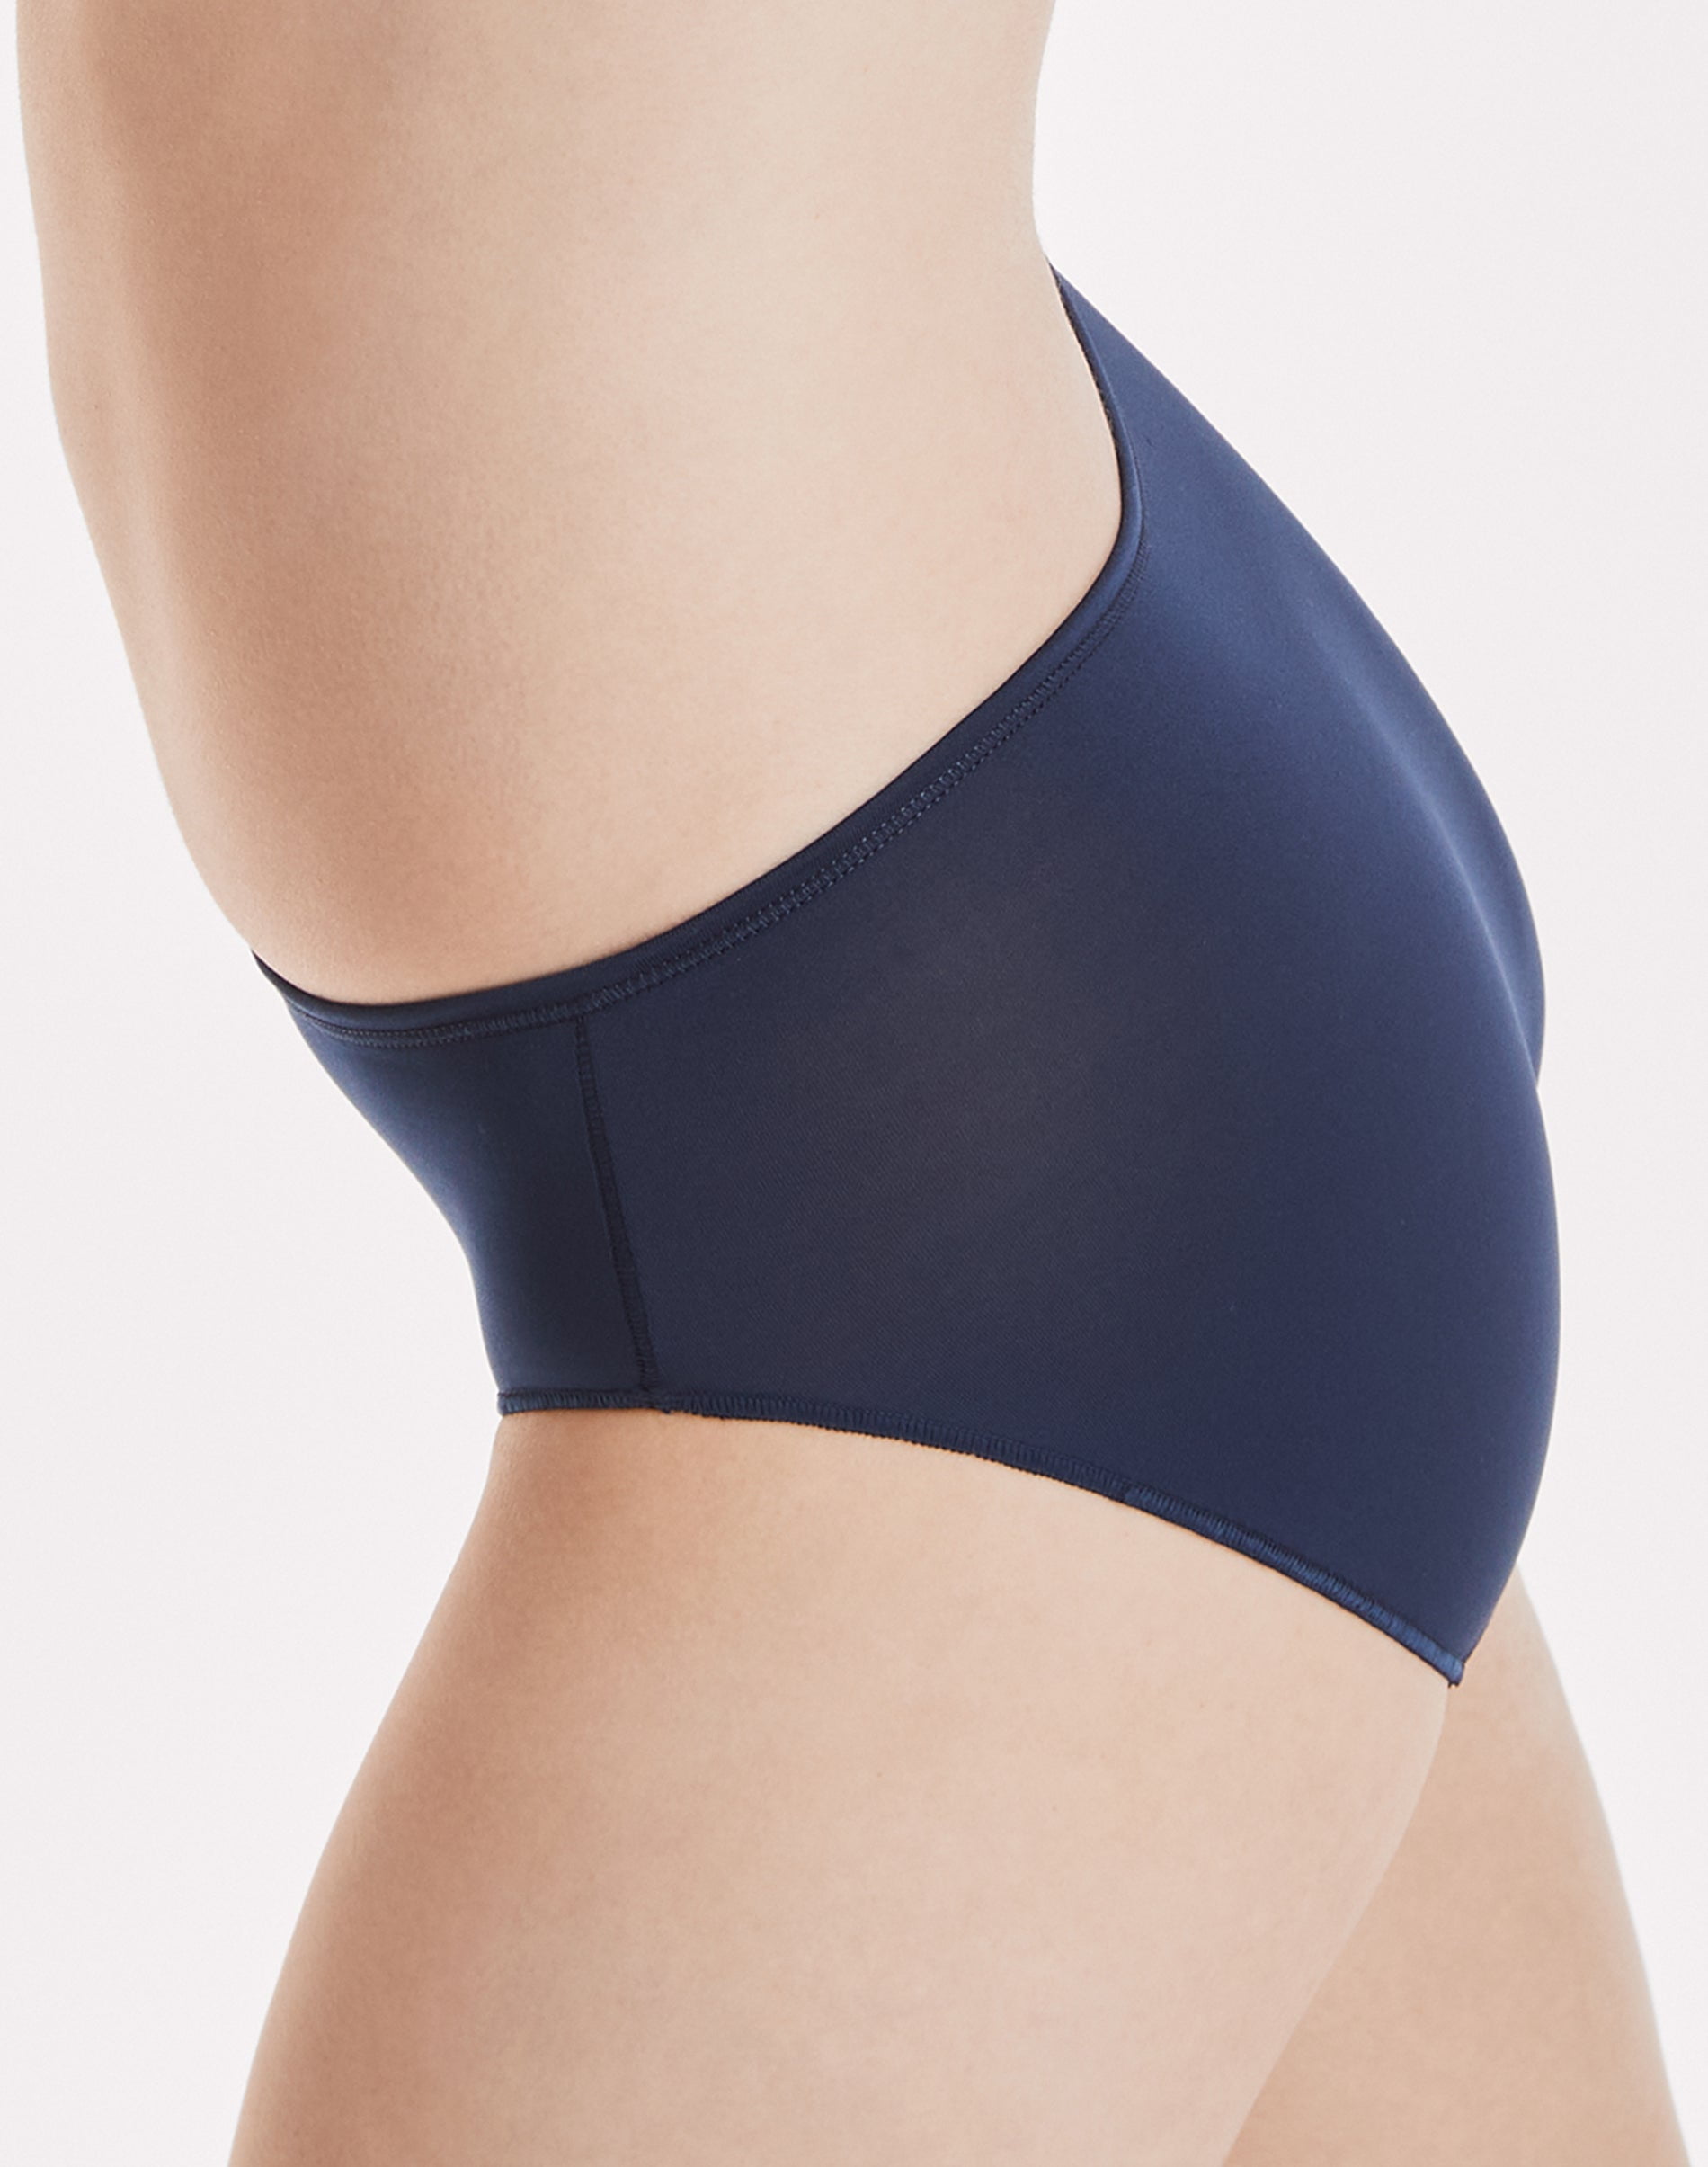 Hanes Women's Microfiber Hipster Underwear, Moisture-Wicking, 10